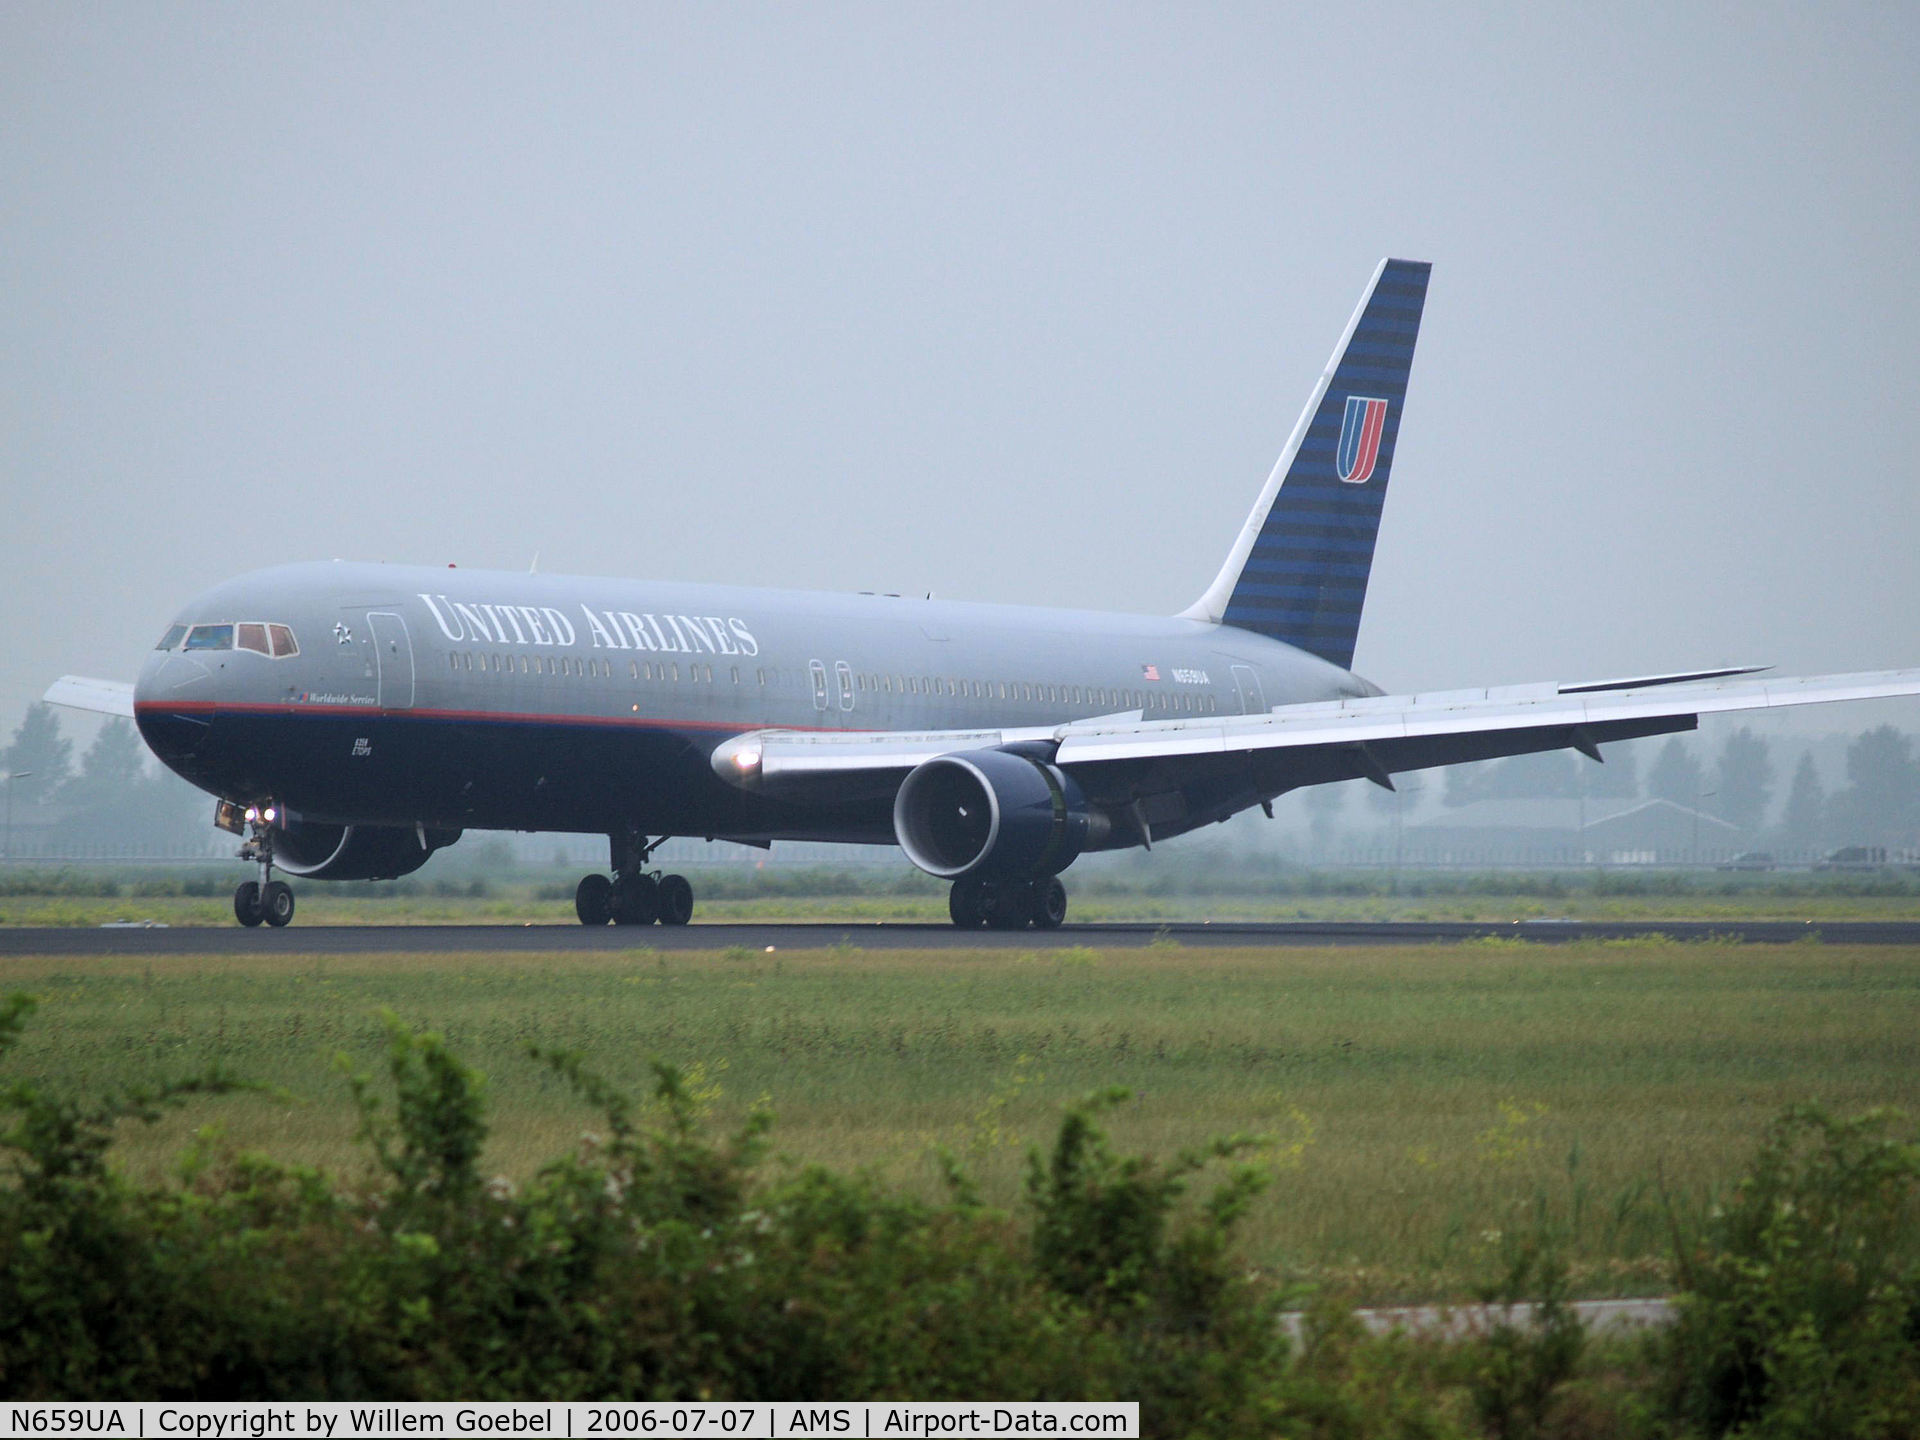 N659UA, 1993 Boeing 767-322 C/N 27114, Landing on runway R18 of Amsterdam Airport